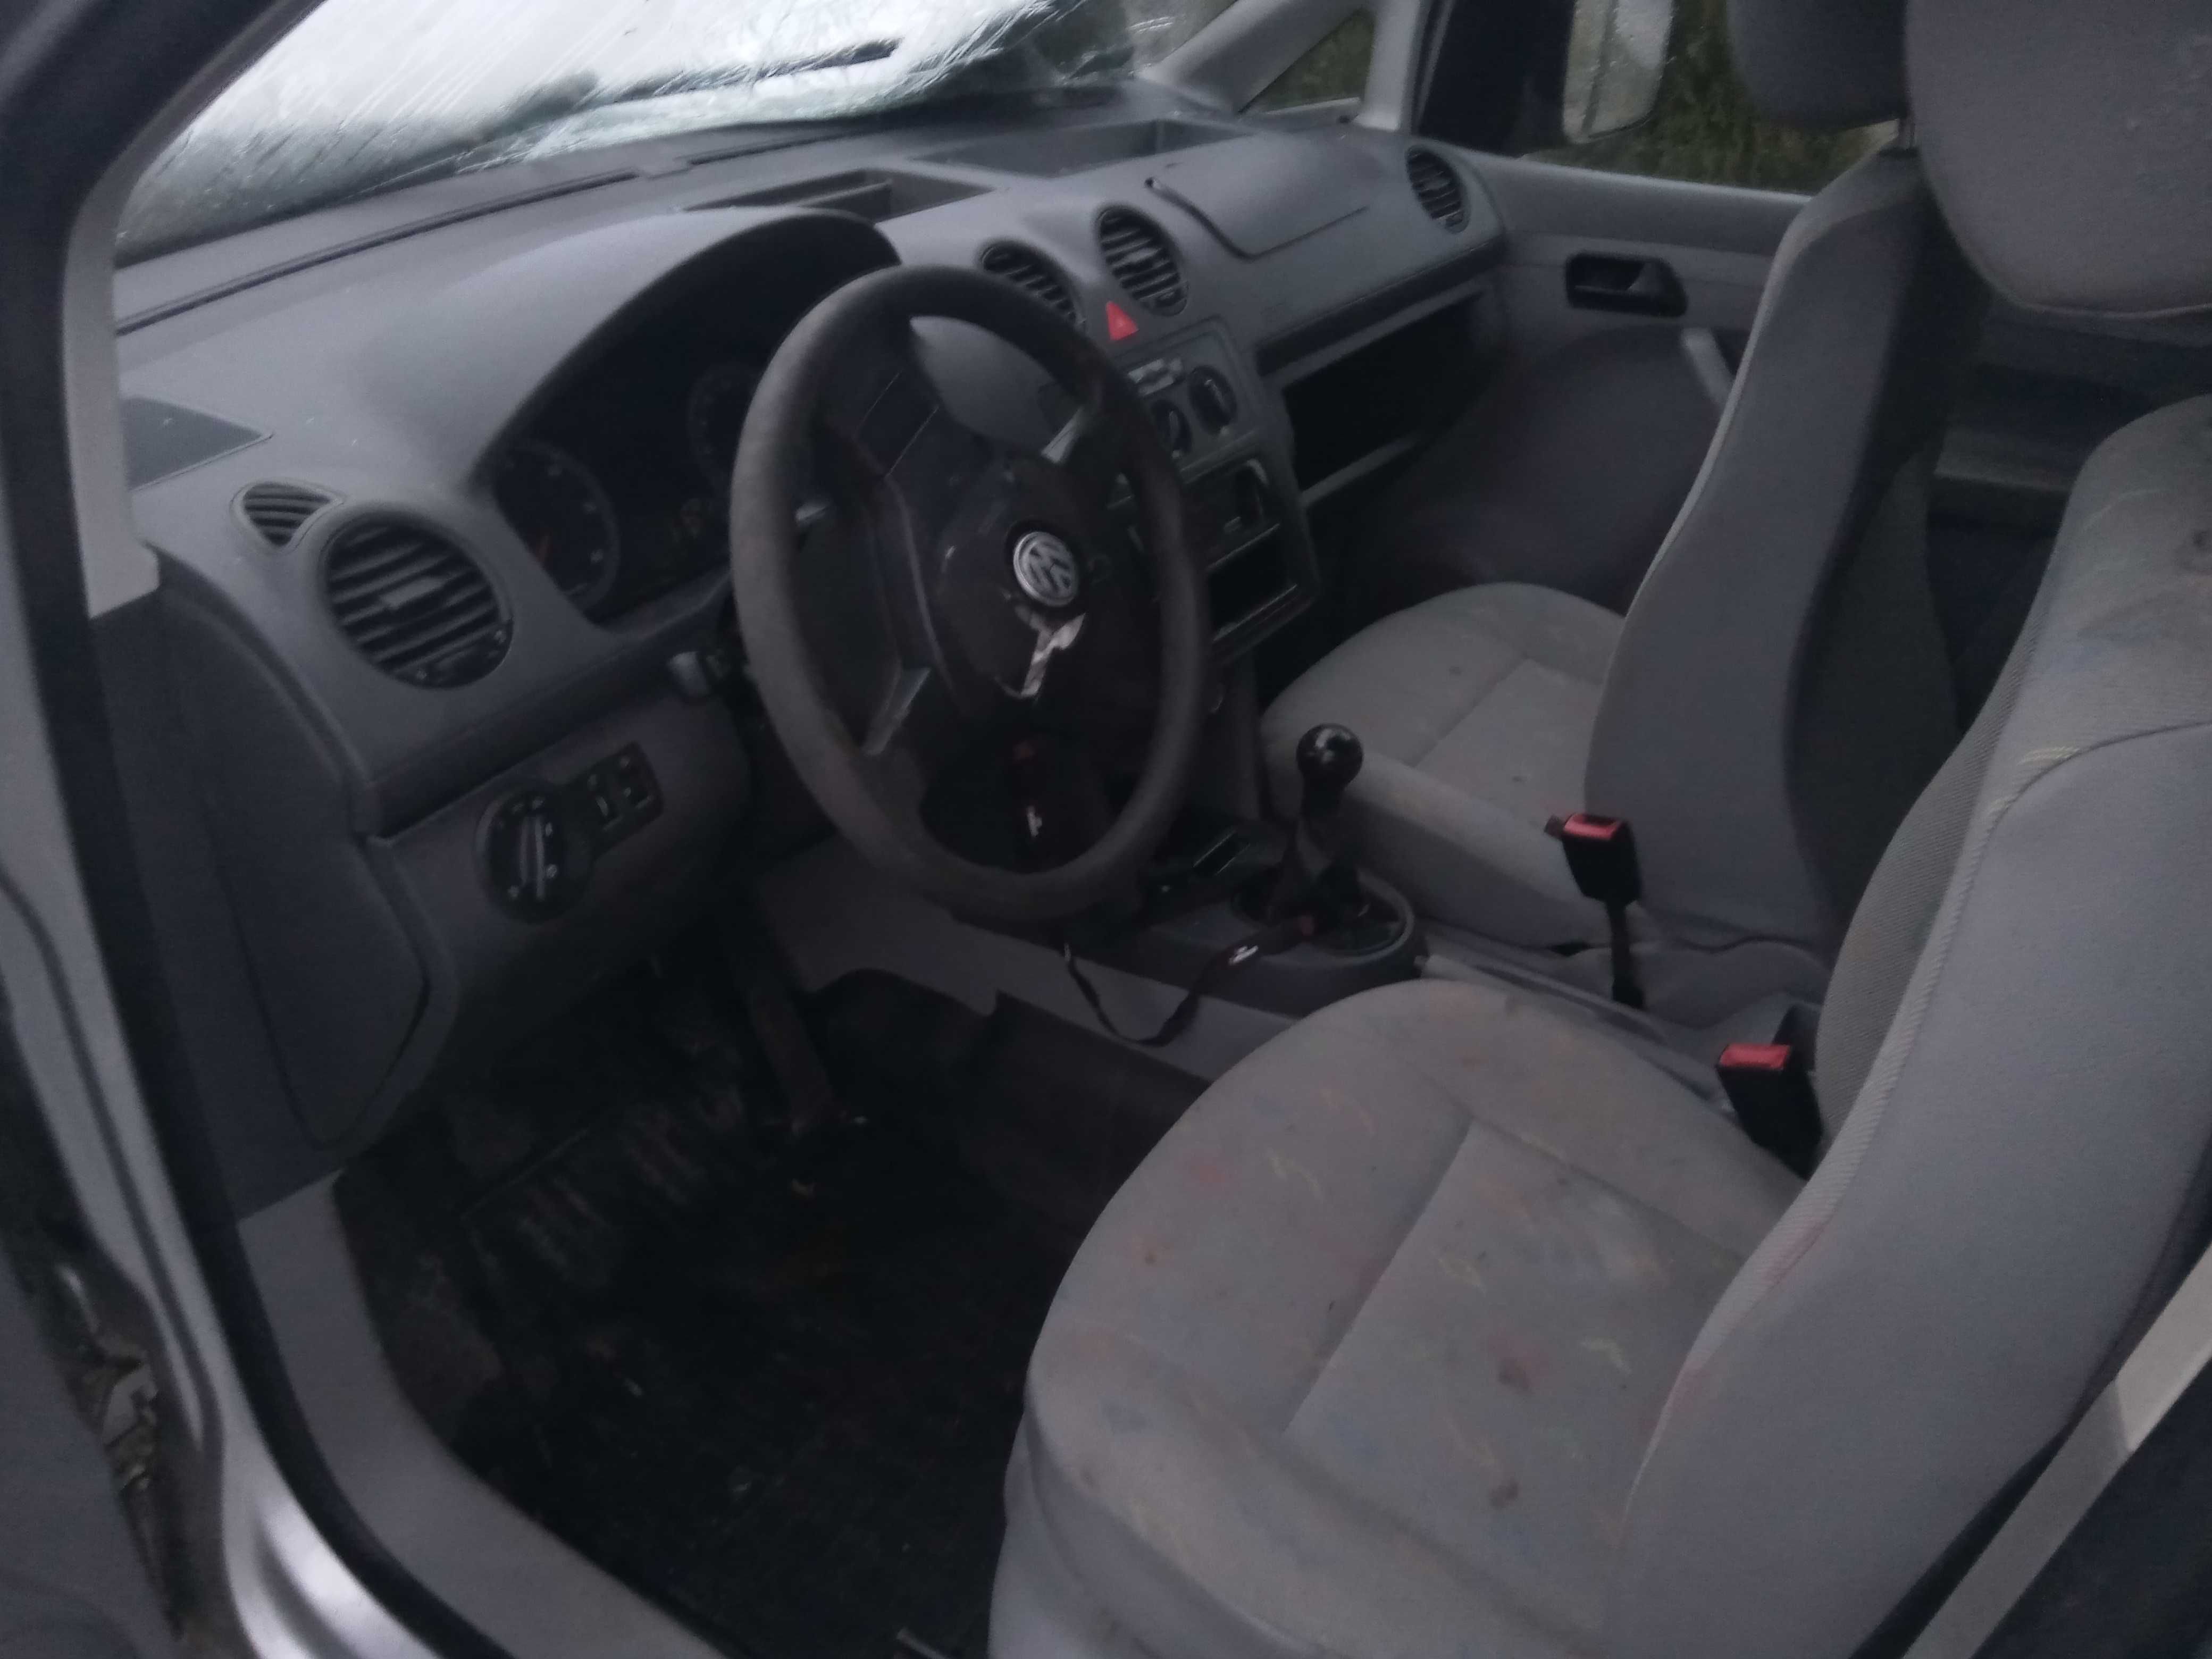 VW Caddy 2007 rok 1.9 Tdi  kod silnika BLS 138 tys km klima po wypadku